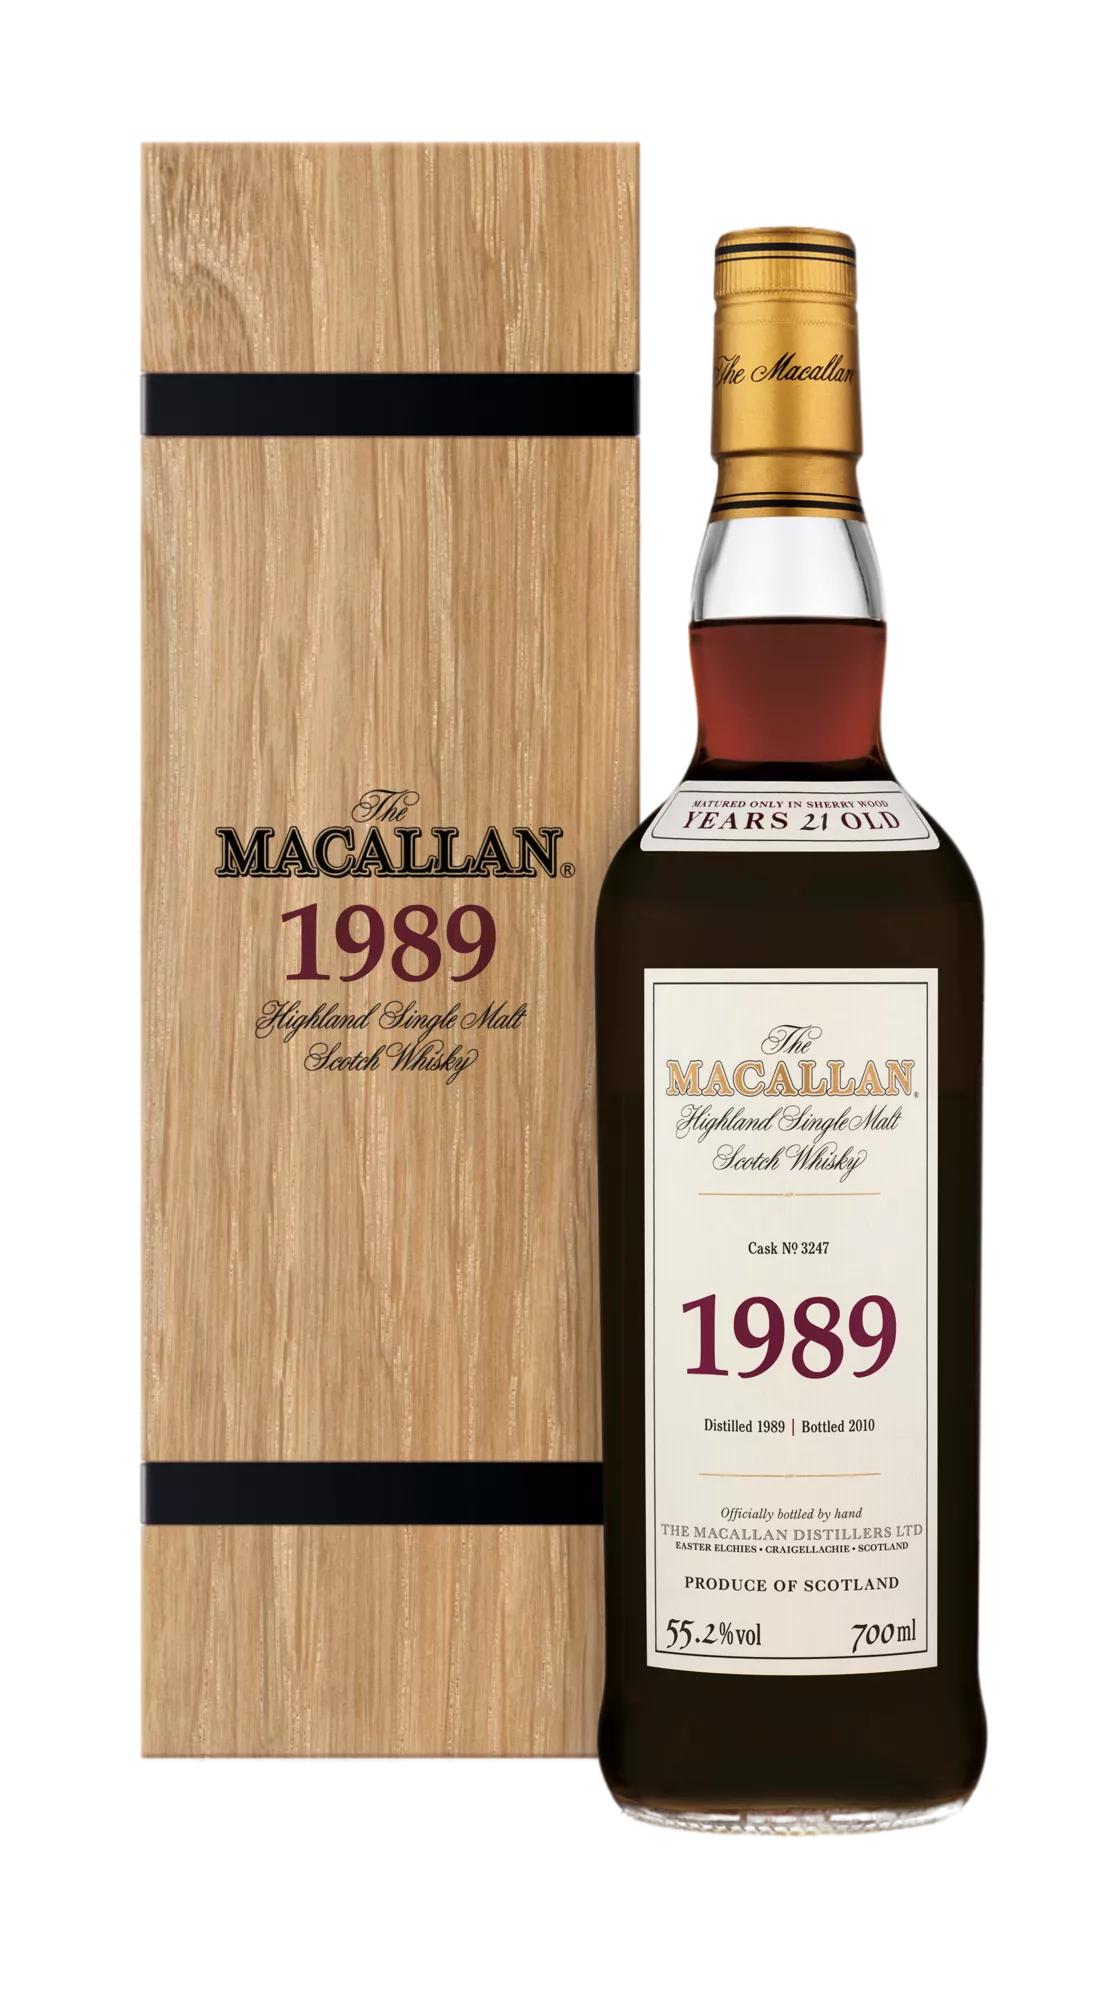 The Macallan 1989 Fine & Rare Whisky - The Macallan®